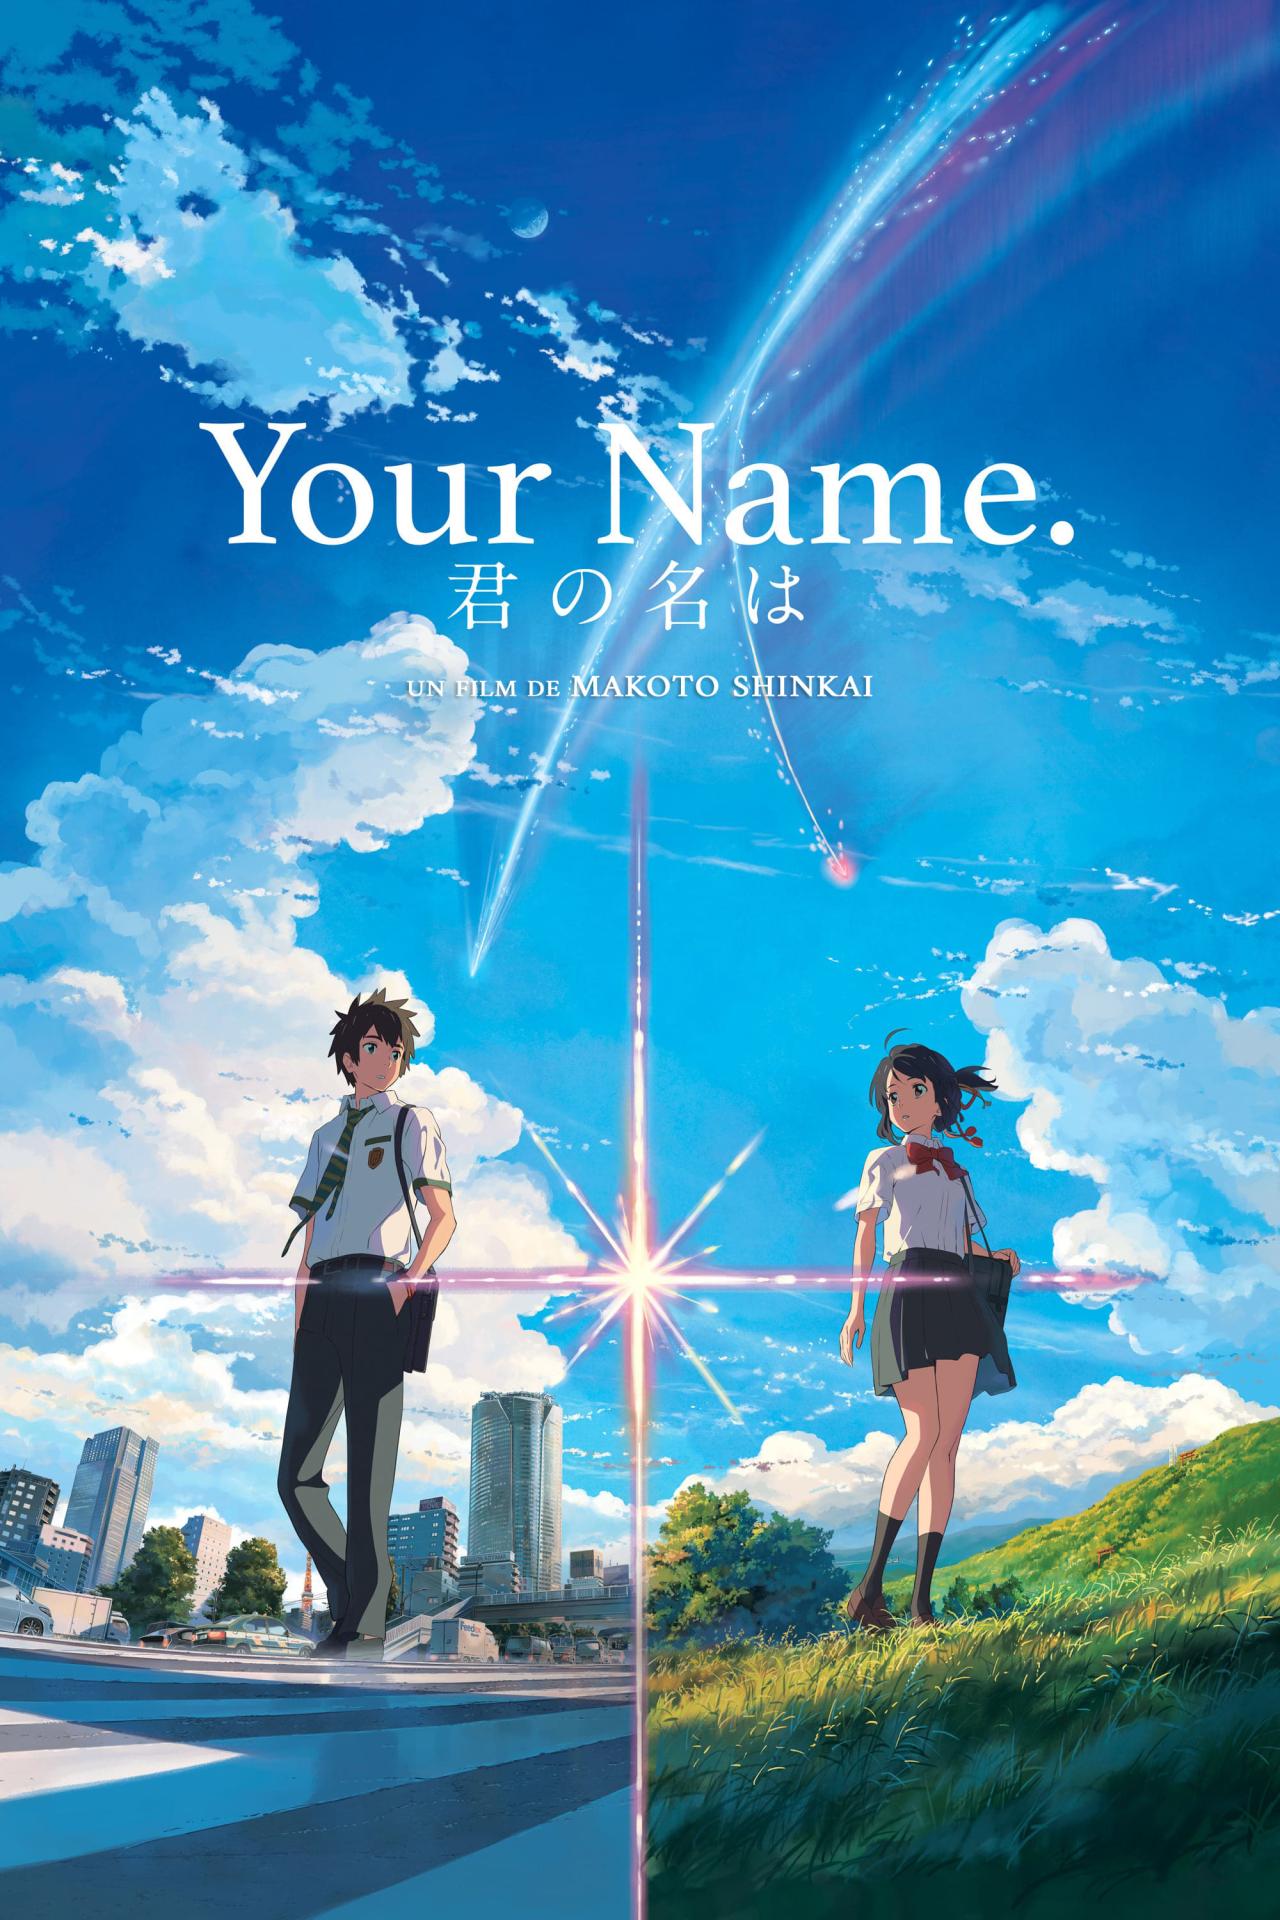 Your Name. est-il disponible sur Netflix ou autre ?